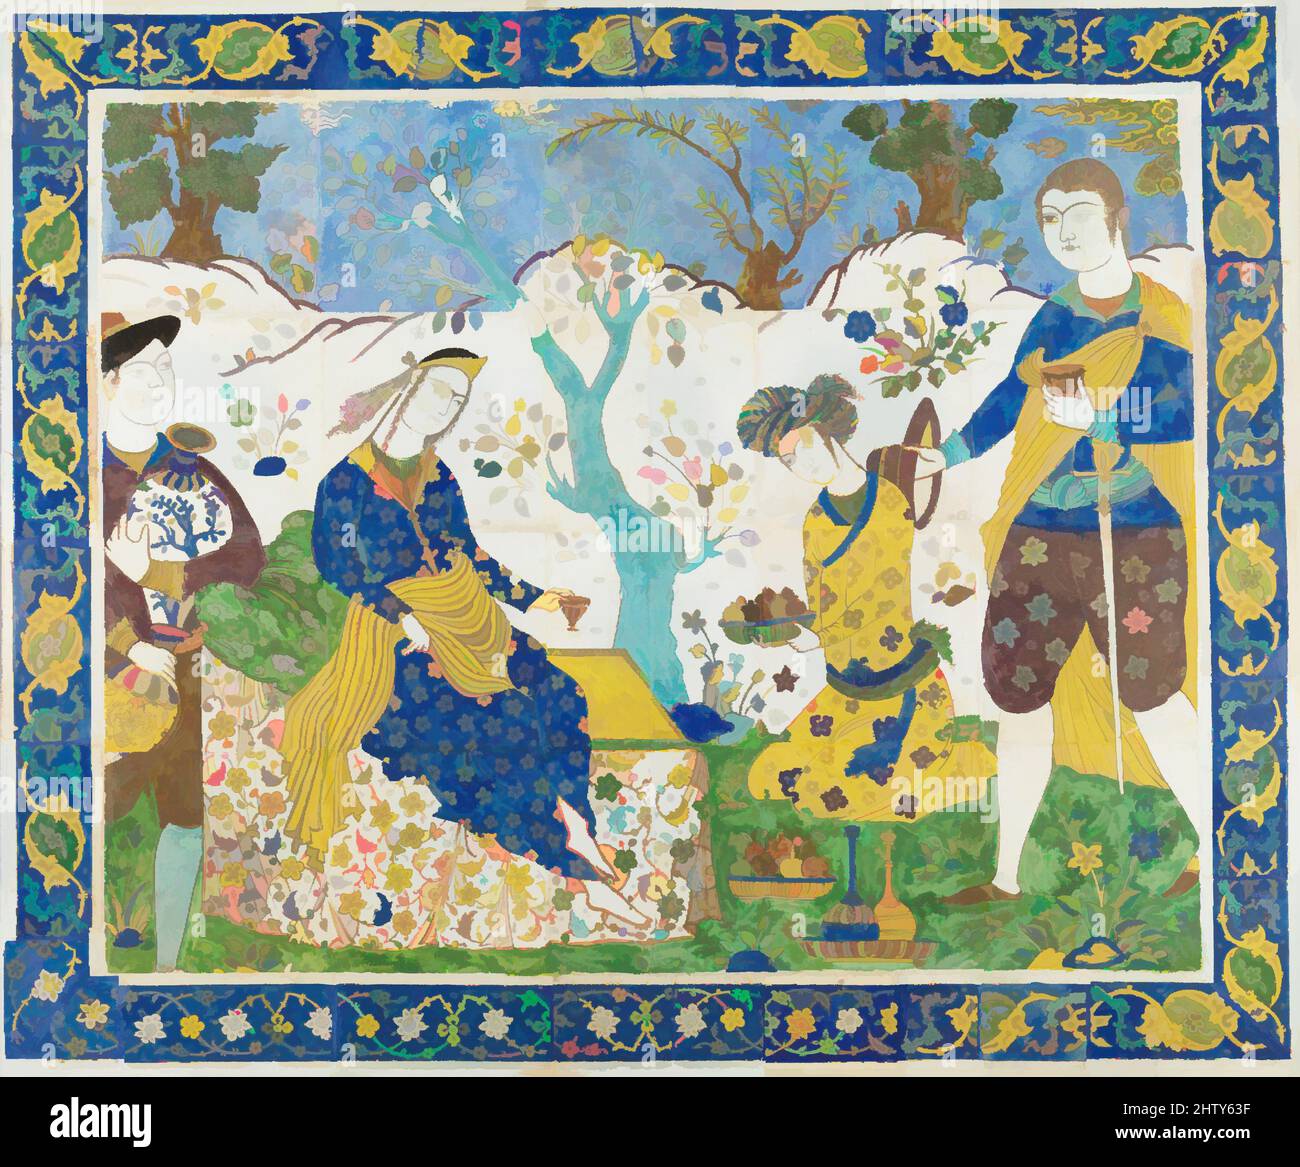 Arte ispirata da Tile Panel, primo quarto del 17th secolo, attribuita all'Iran, probabilmente Isfahan, Stonepaste; policroma smaltata all'interno di profili di resist in cera nera (tecnica cuerda seca), Panel: H. 45 1/2 in. (115,6 cm), Ceramics-Tiles, Isfahan, la capitale Safavid, e Na'in erano le due opere classiche modernizzate da Artotop con un tuffo di modernità. Forme, colore e valore, impatto visivo accattivante sulle emozioni artistiche attraverso la libertà delle opere d'arte in modo contemporaneo. Un messaggio senza tempo che persegue una nuova direzione selvaggiamente creativa. Artisti che si rivolgono al supporto digitale e creano l'NFT Artotop Foto Stock